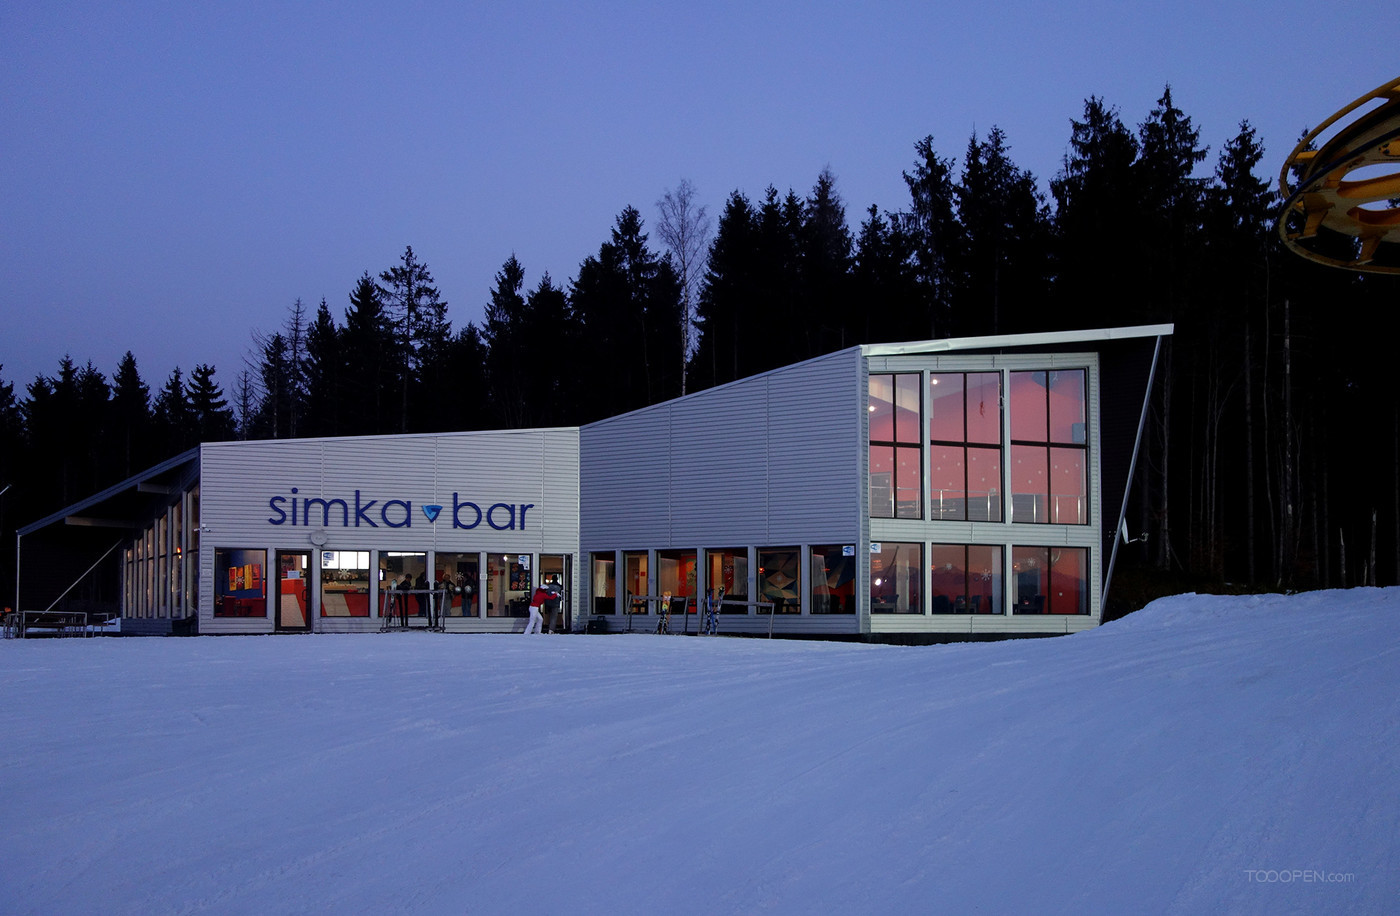 户外滑雪场餐厅酒吧建筑设计作品-02